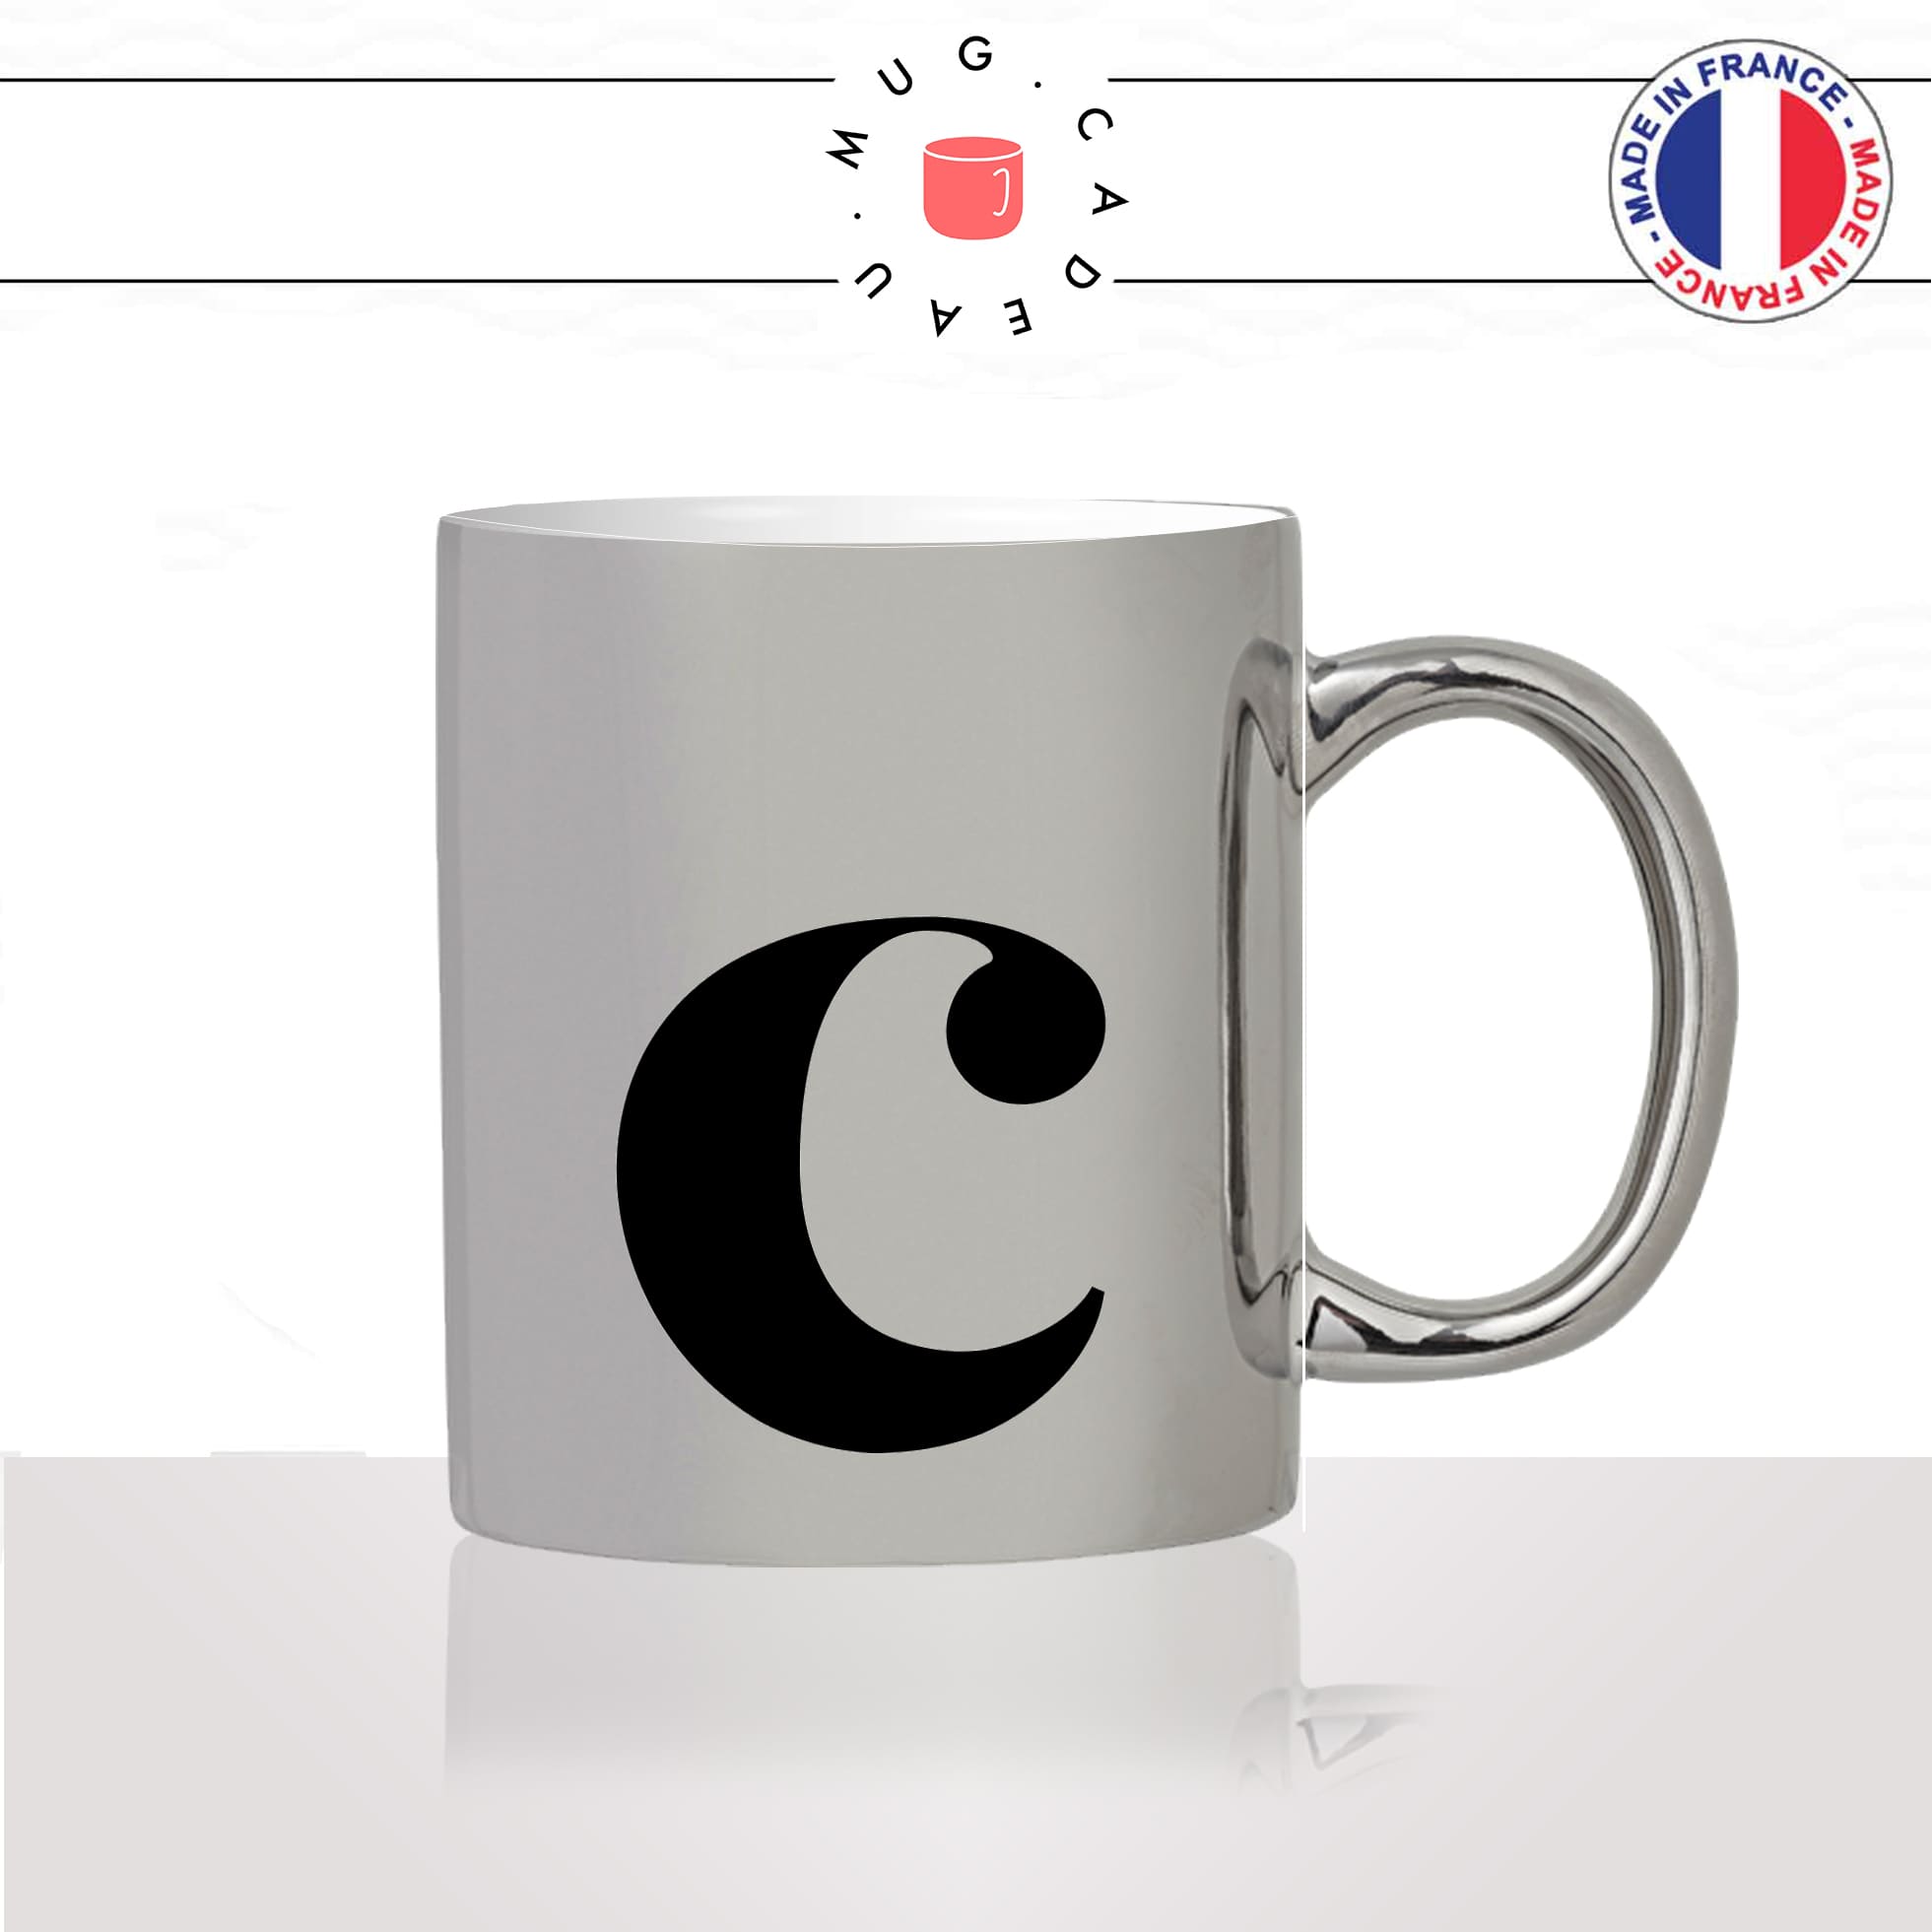 mug-tasse-argent-argenté-silver-initiale-C-corinne-clara-claire-cleo-chloé-camille-lettre-collegue-original-idée-cadeau-fun-cool-café-thé2